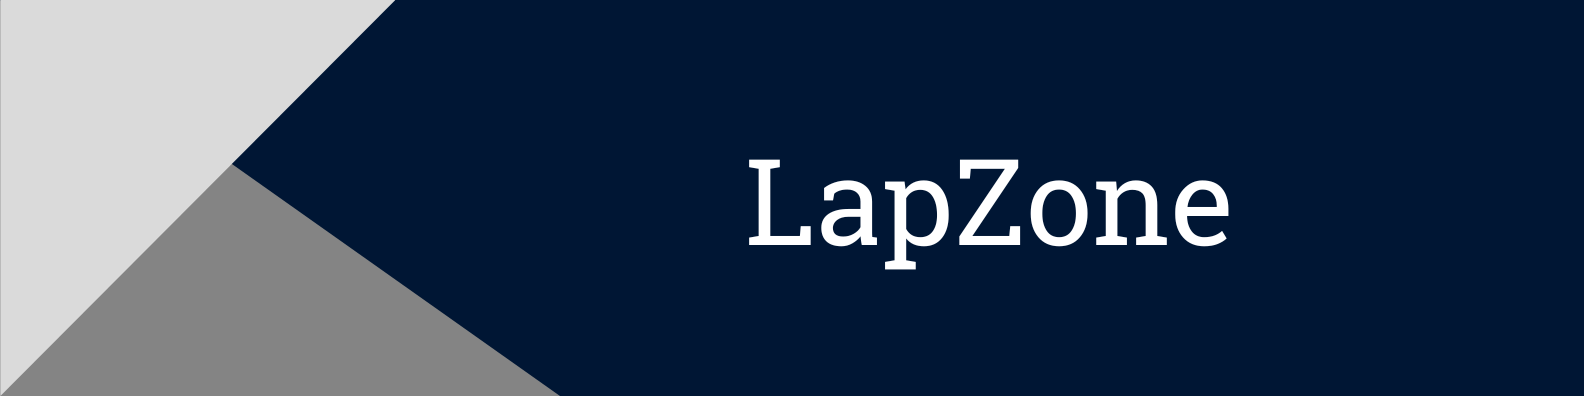 LapZone header